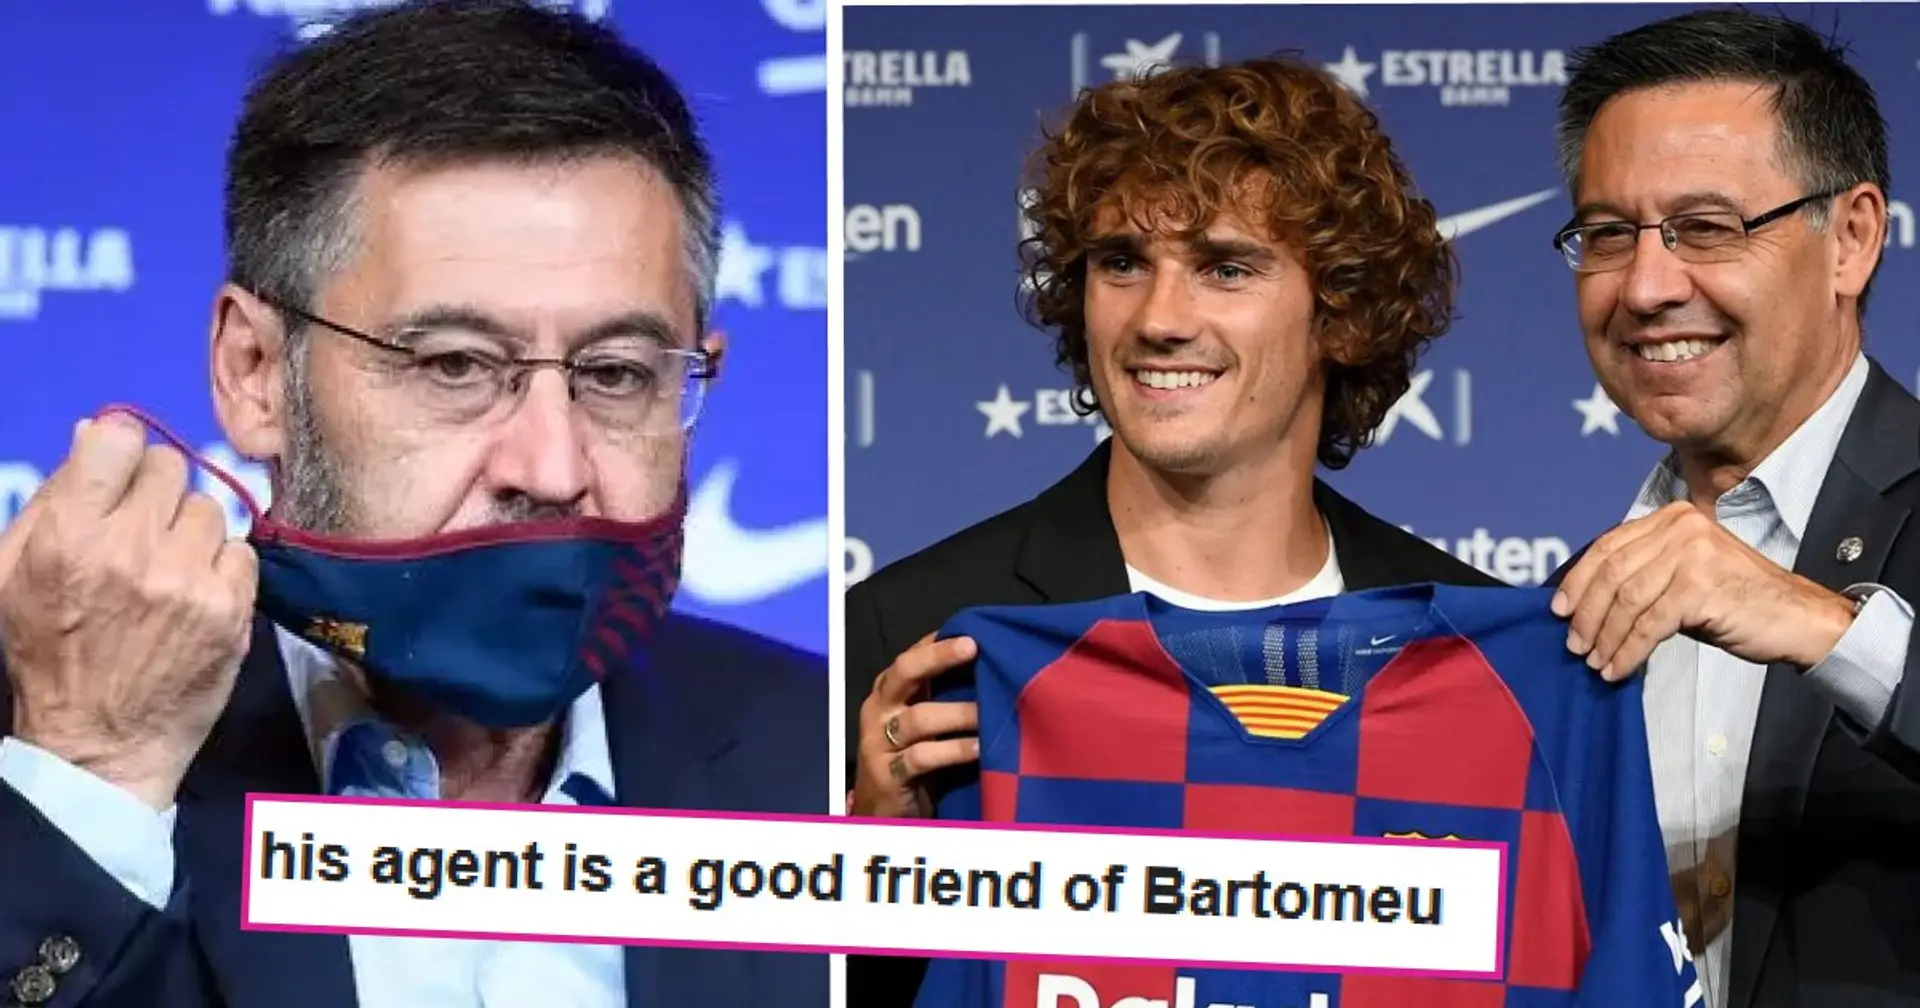 "Verpflichtung dieses Spielers": Barca-Fans nennen Bartomeus größten Fehler - nicht Griezmann oder Coutinho  